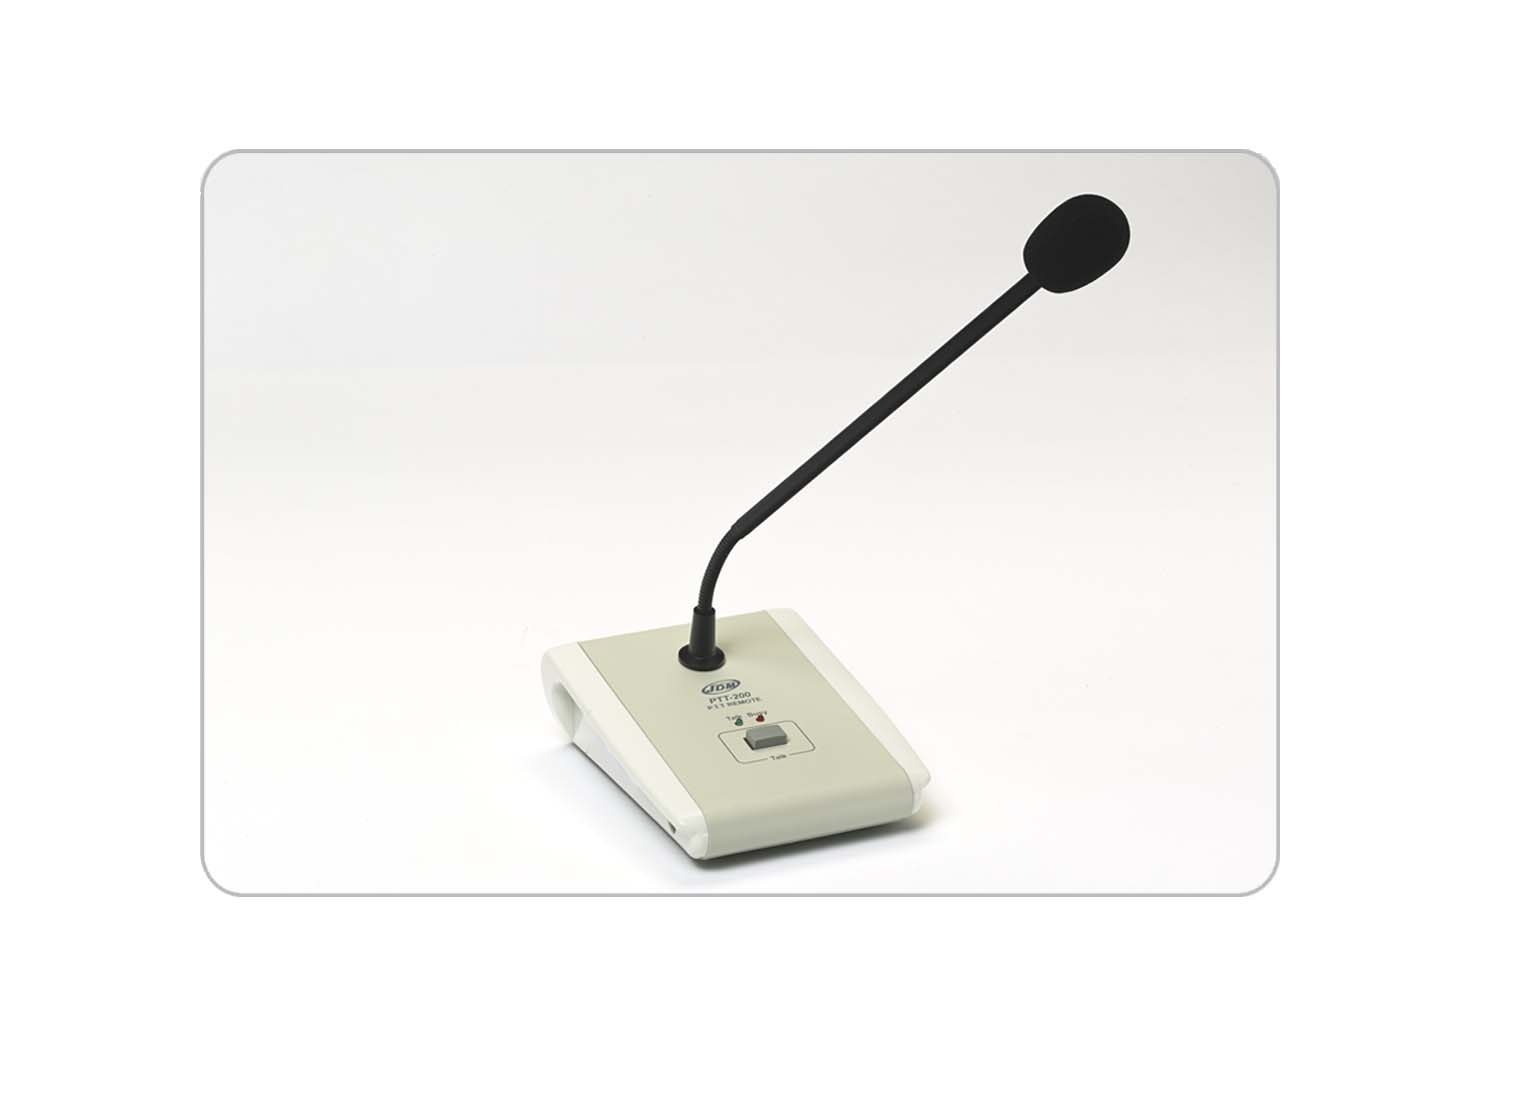 Pupitre microphone d'appel RJ45 pour amplificateurs IP